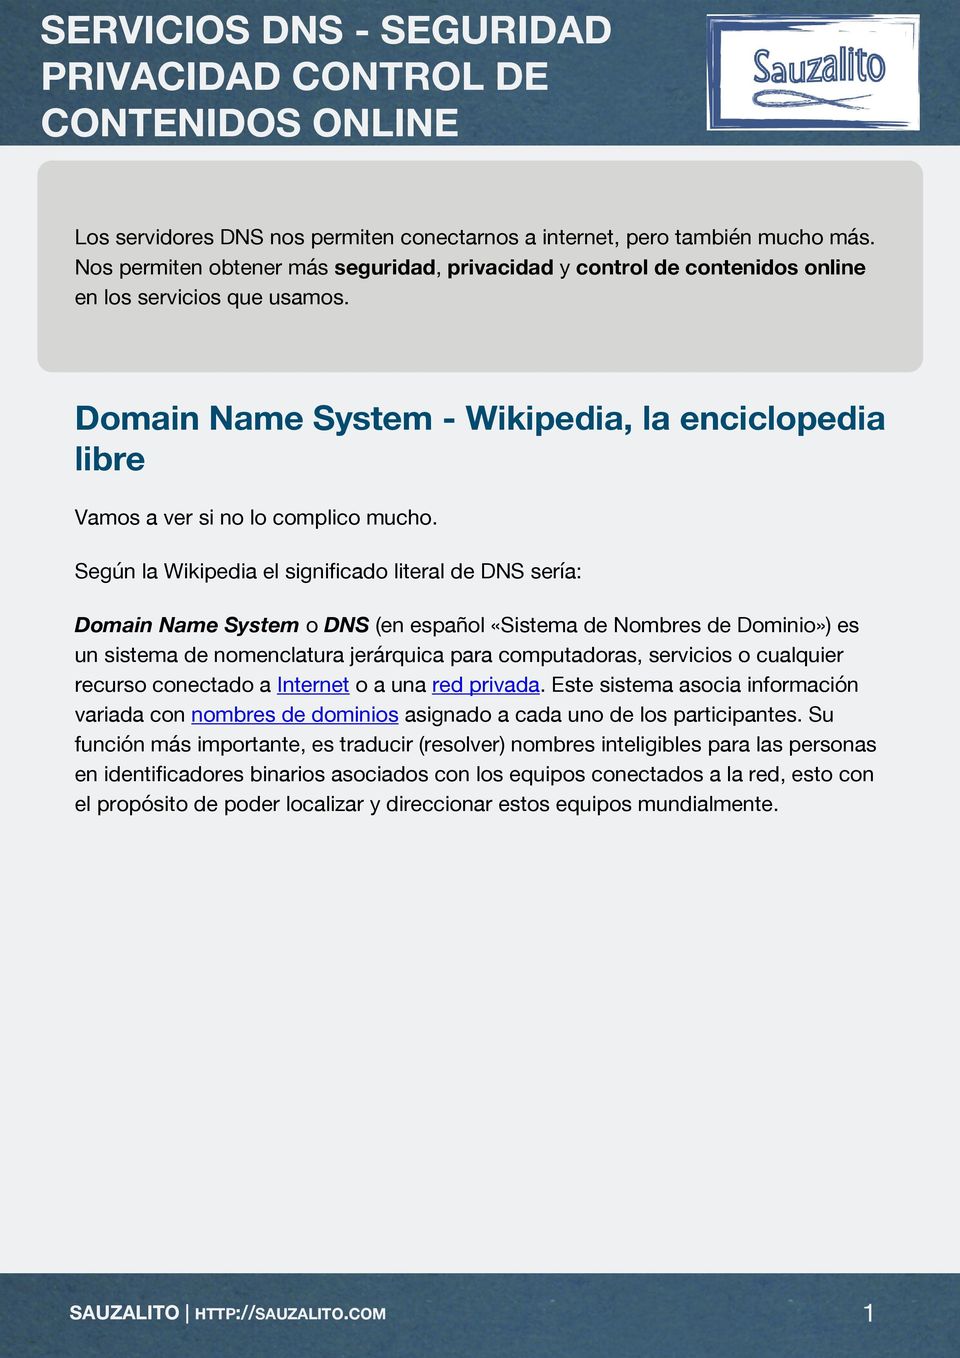 Según la Wikipedia el significado literal de DNS sería: Domain Name System o DNS (en español «Sistema de Nombres de Dominio») es un sistema de nomenclatura jerárquica para computadoras, servicios o